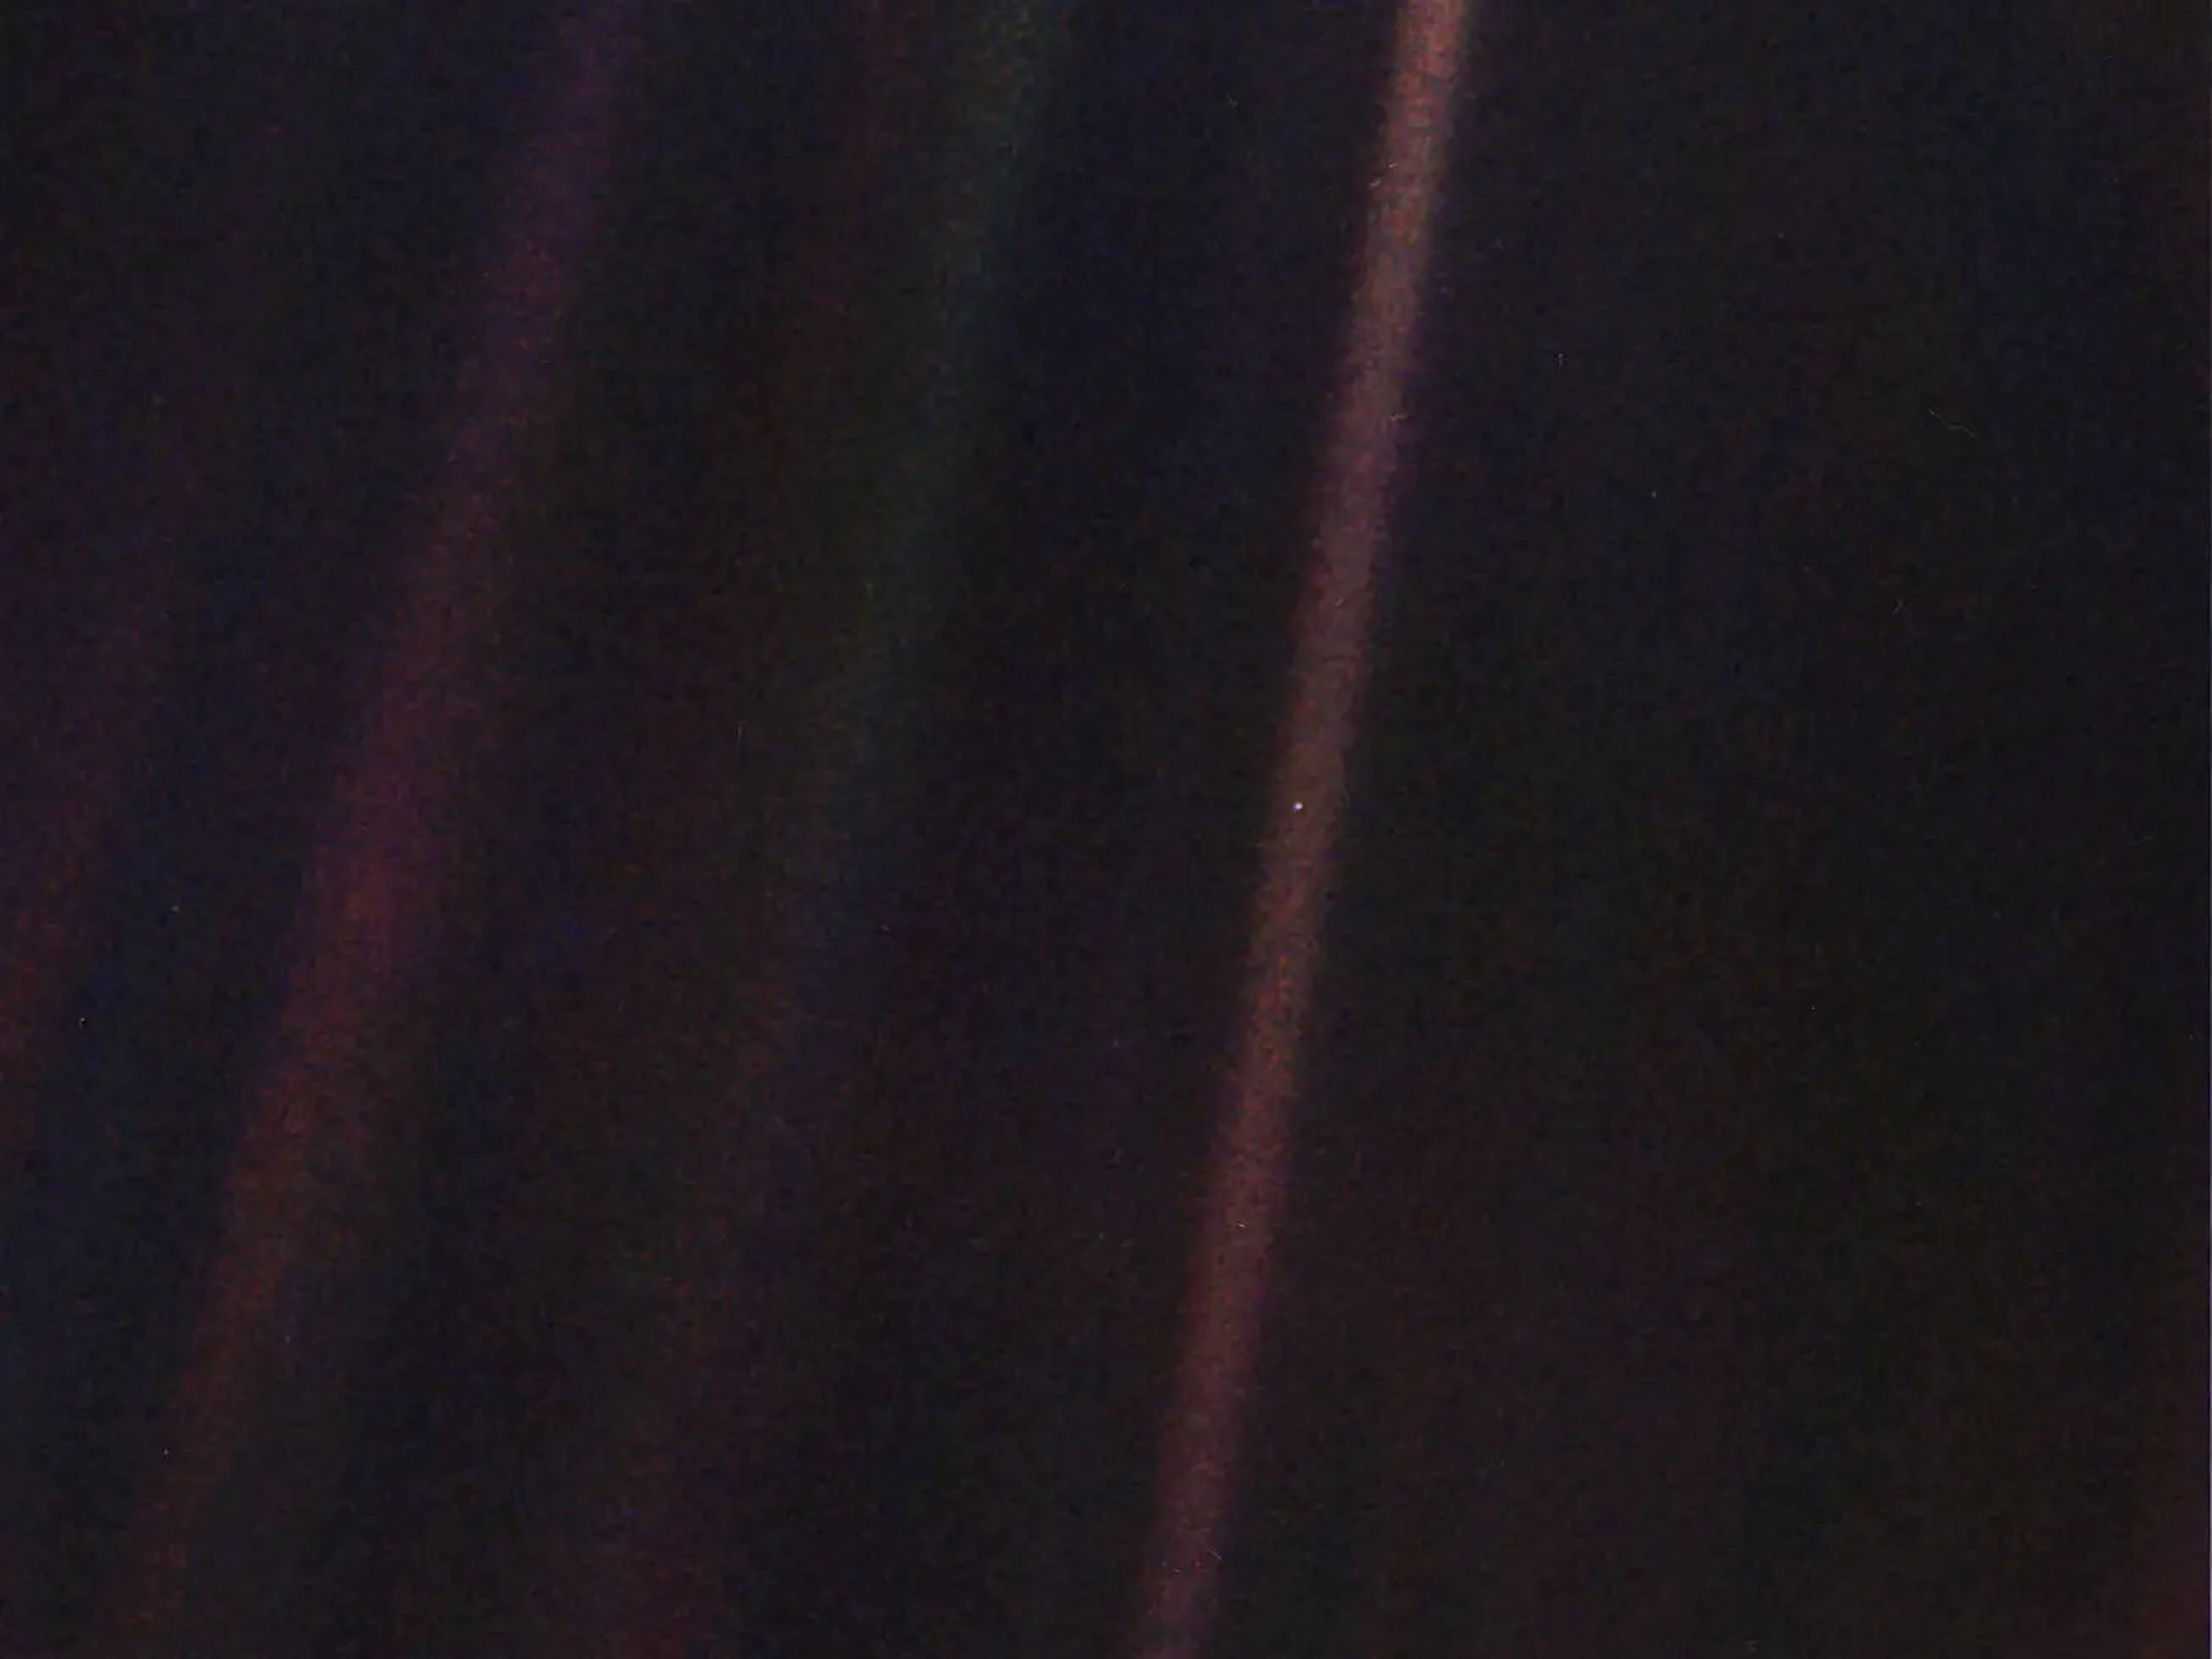 La imagen original de Pale Blue Dot, publicada el 14 de febrero de 1990. La Tierra es visible como una mancha brillante dentro del rayo de Sol justo a la derecha del centro.